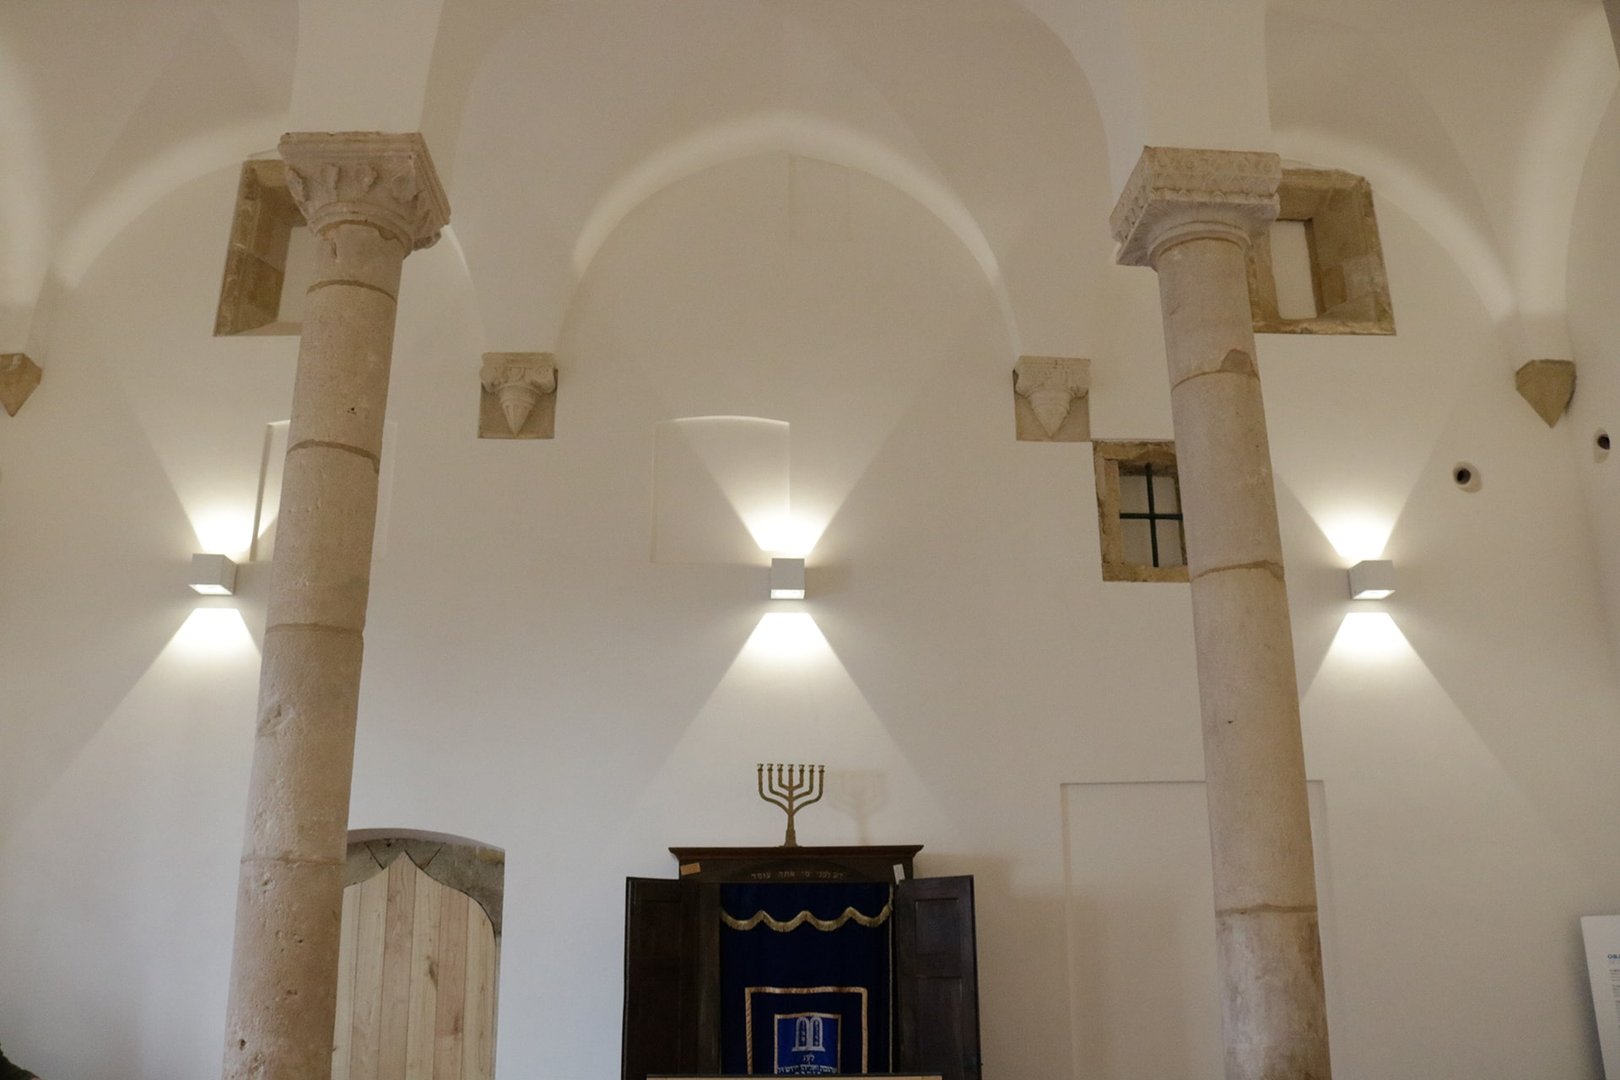 Desde 15 de outubro de 2019 está aqui instalado o Núcleo Interpretativo da Sinagoga de Tomar.